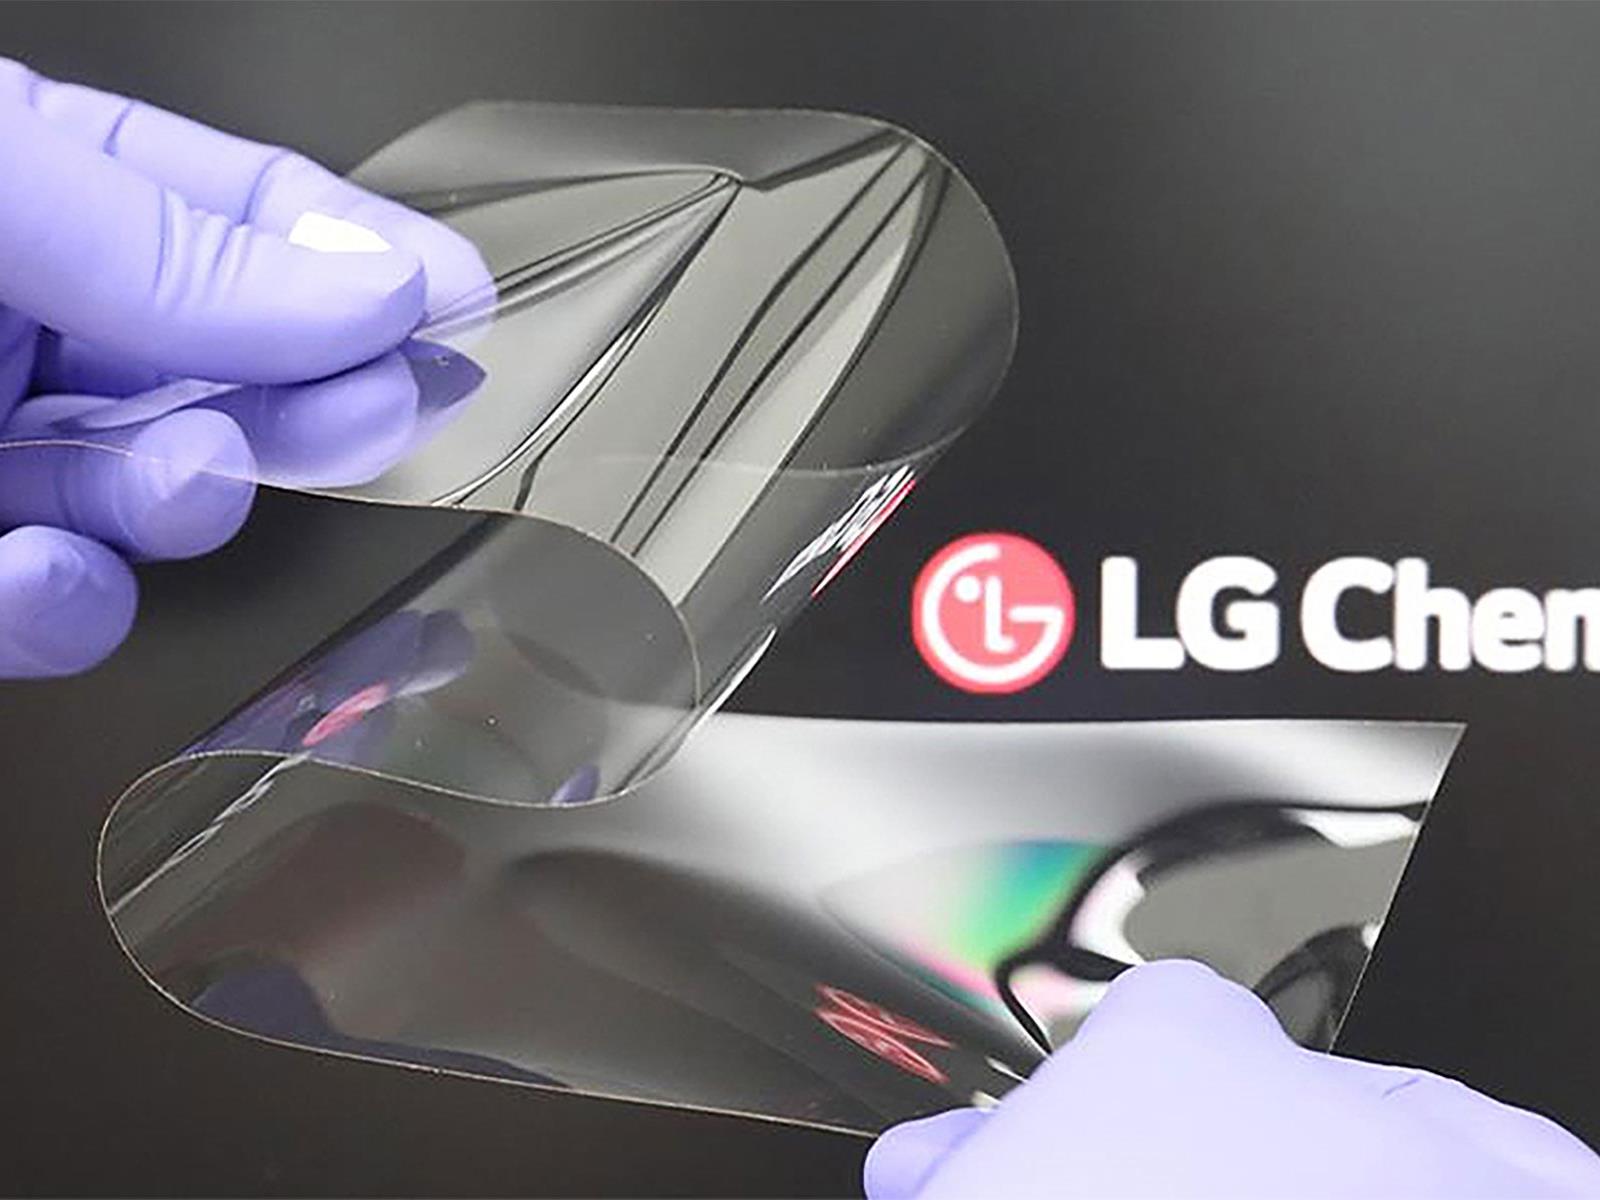 Νέα τεχνολογία της LG για αναδιπλούμενες οθόνες μειώνει την τσάκιση και είναι σκληρή όσο το γυαλί